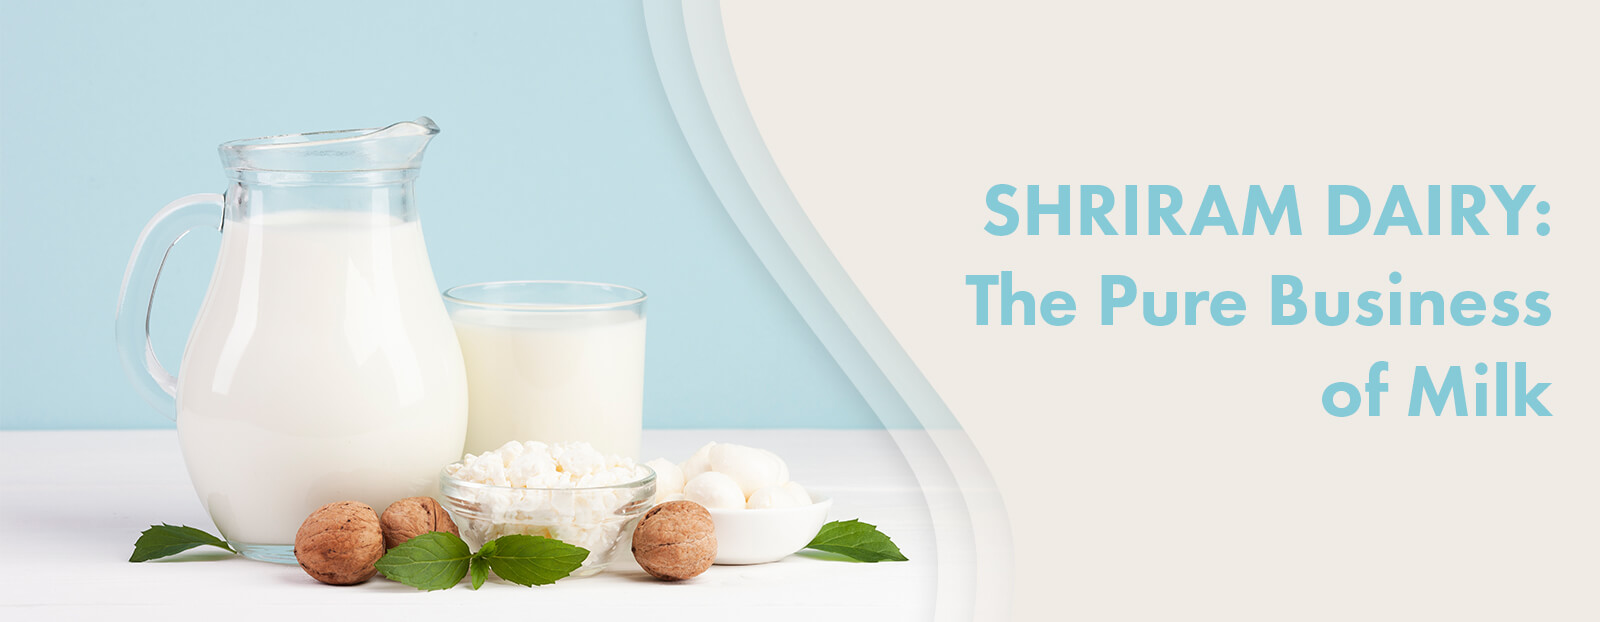 SHRIRAM DAIRY: The Pure Business of Milk